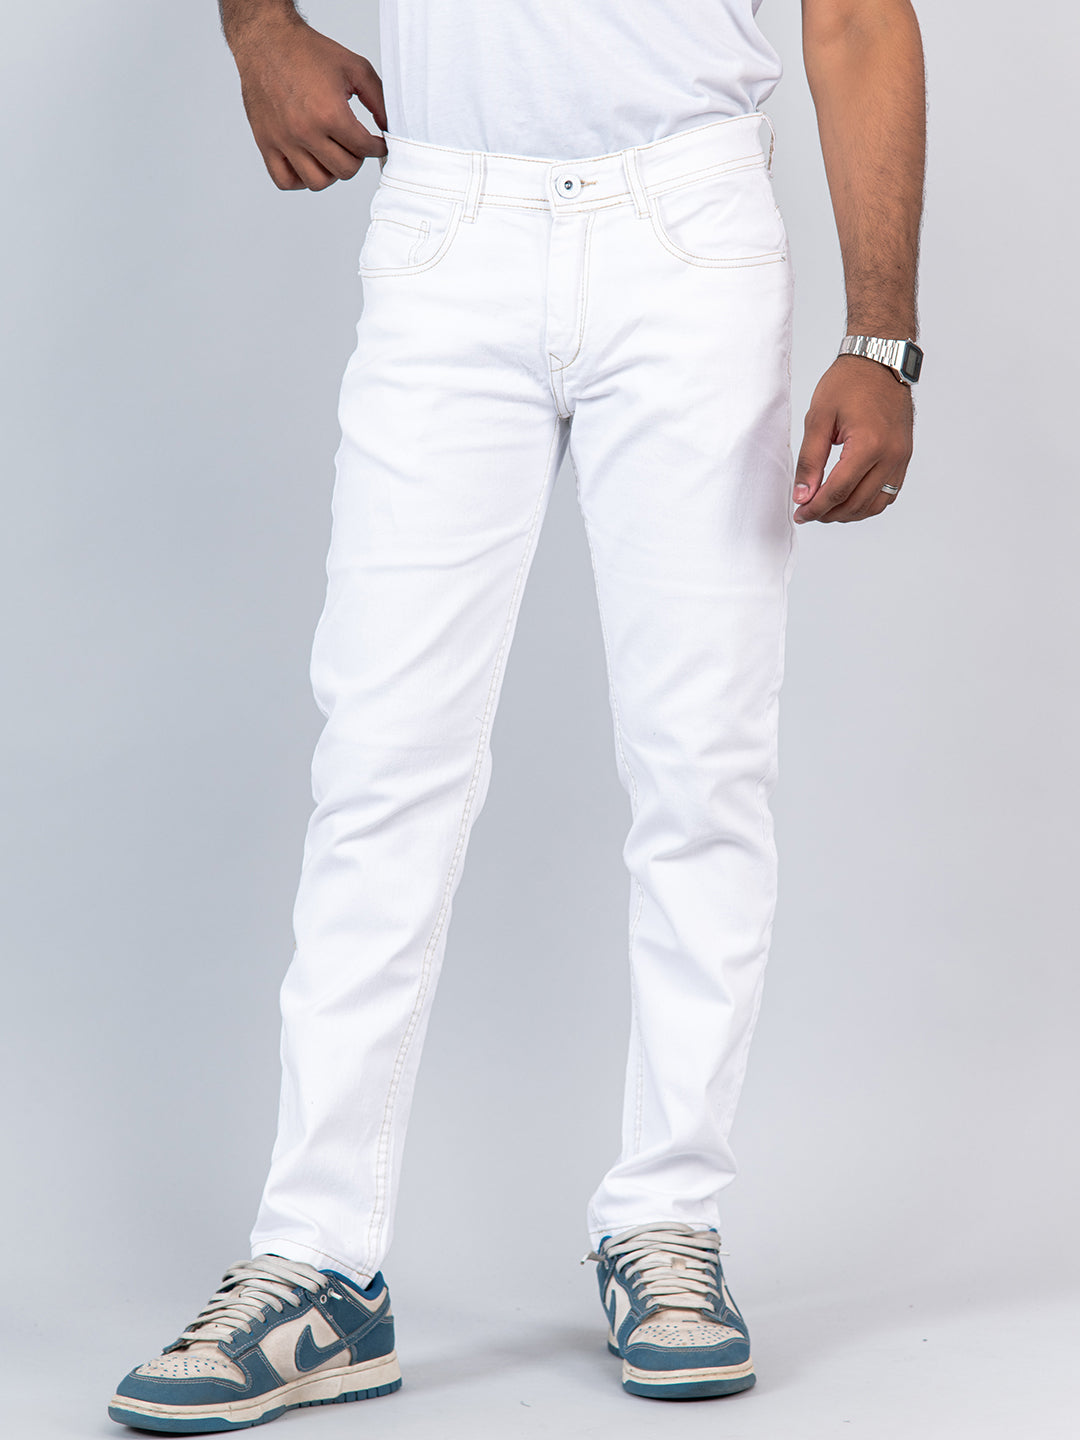 White Ripped Jeans | Men's Skinny Jeans | La Haute – la haute couture